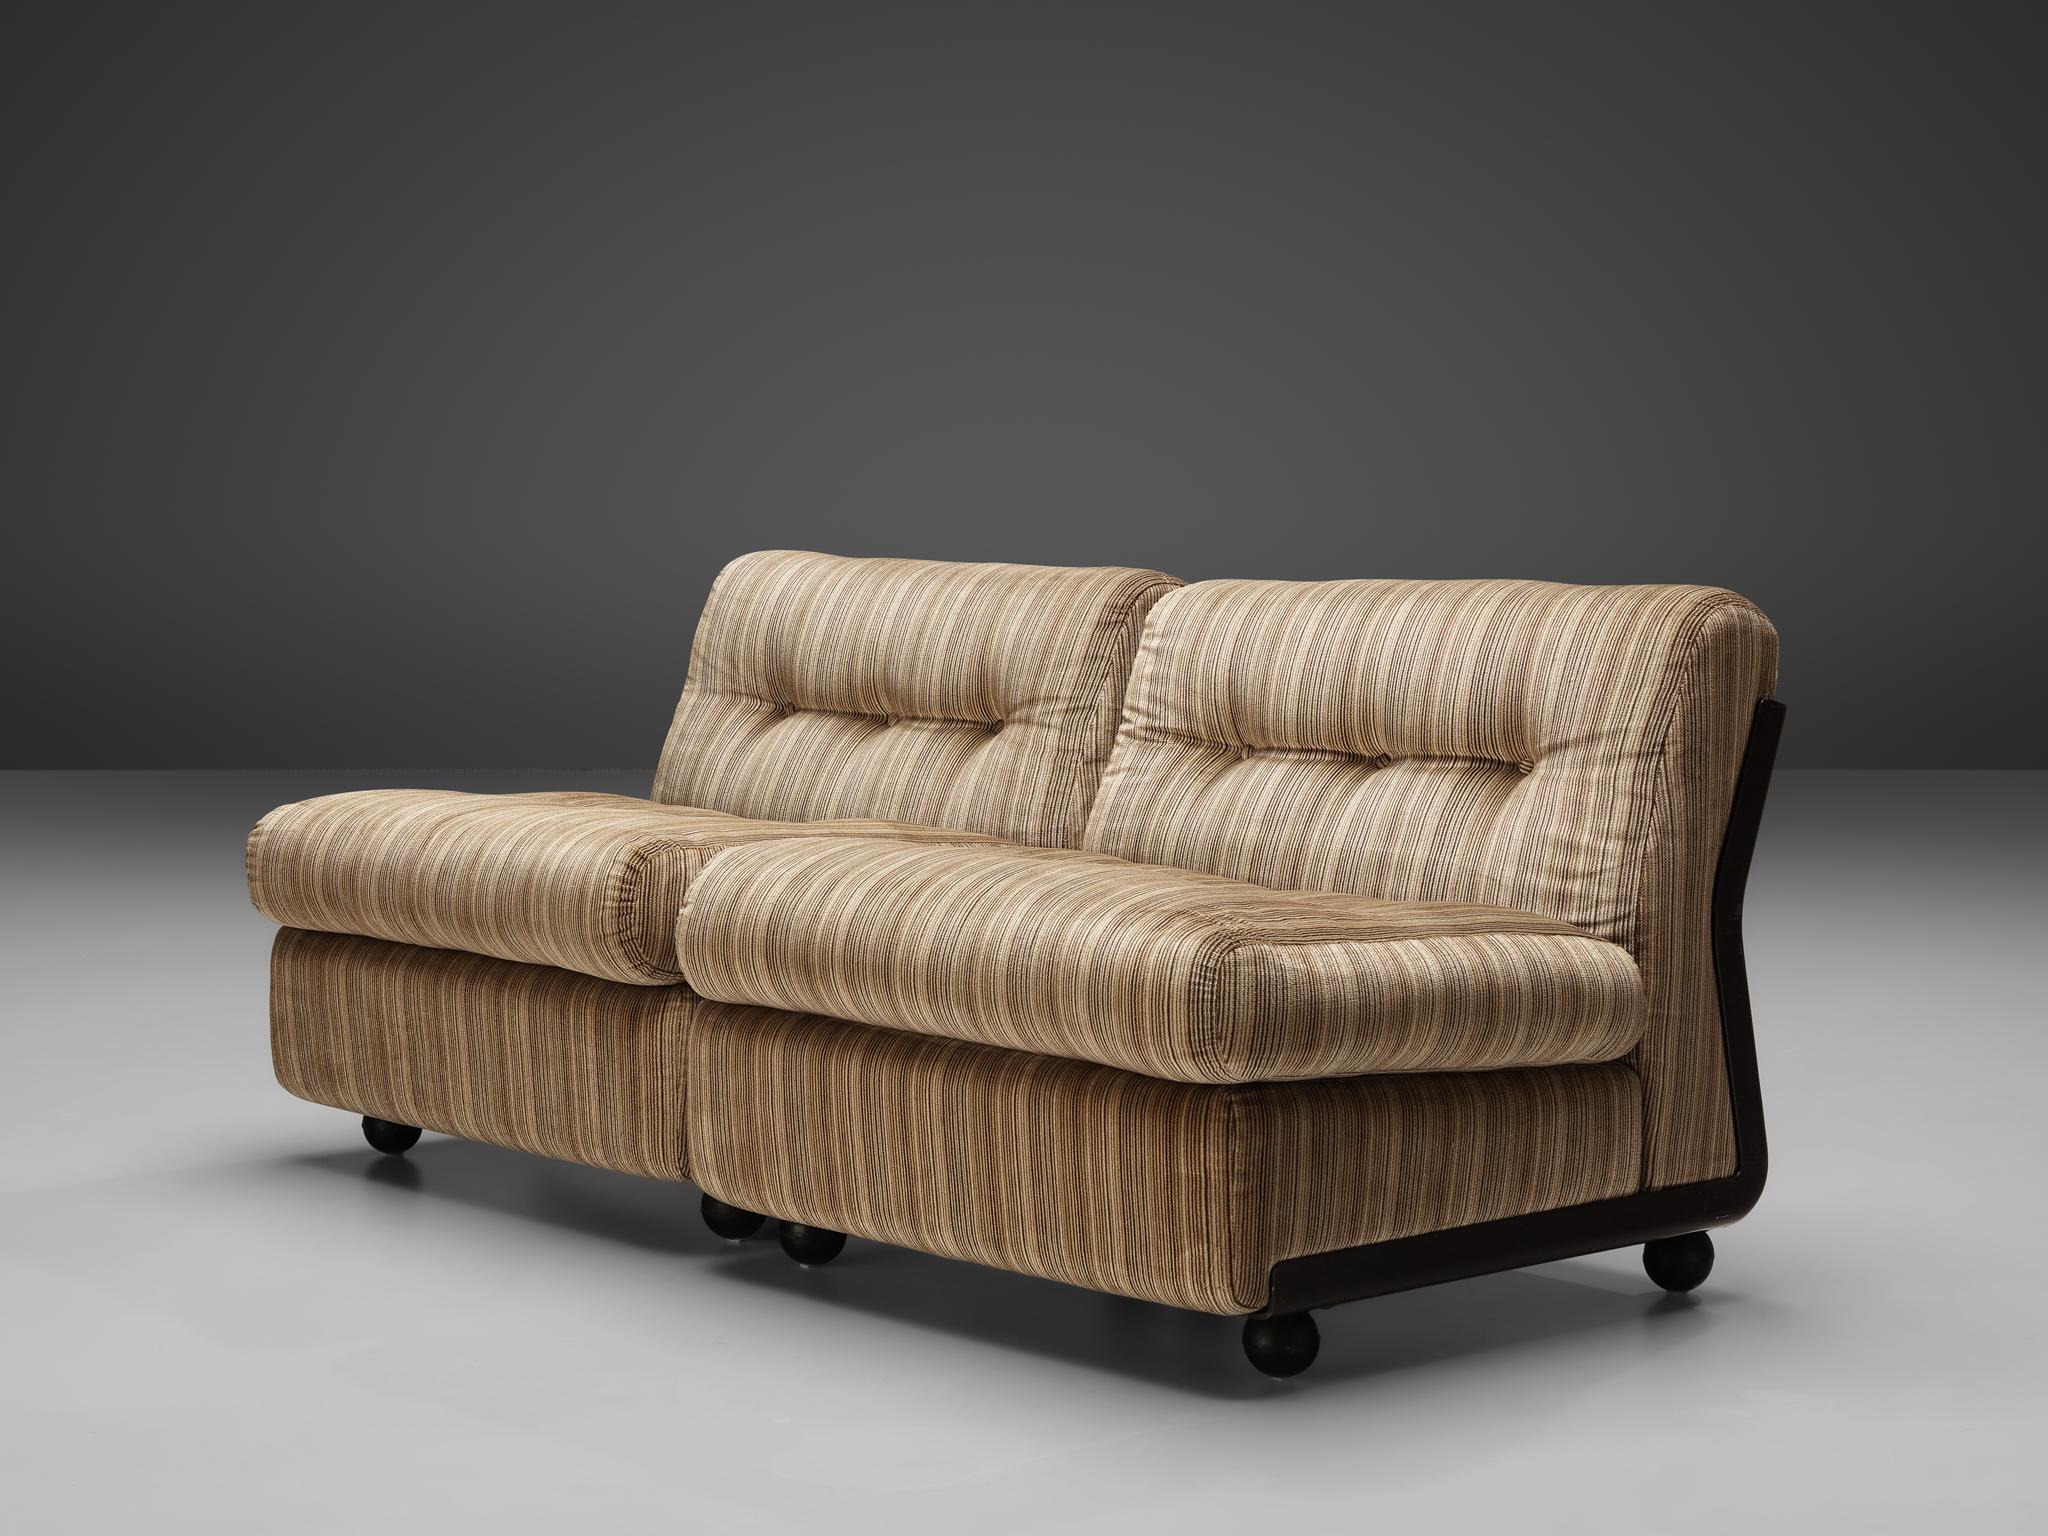 Mid-20th Century Mario Bellini 'Amanta' Modular Sofa in Original Striped Fabric